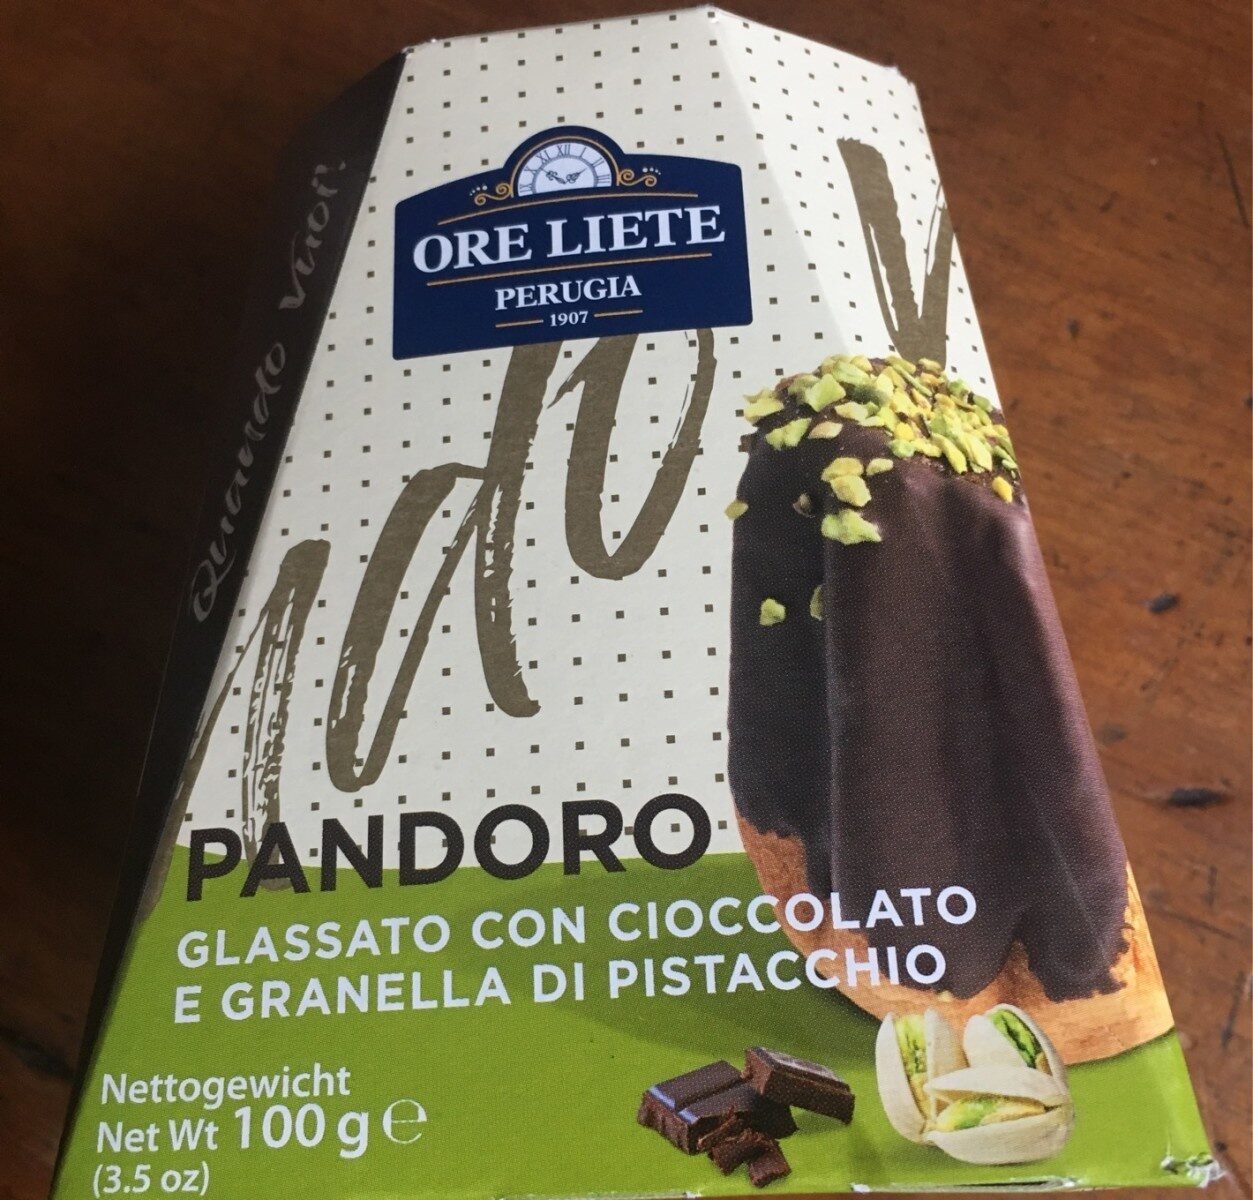 Pandoro cioccolato e pistacchio Ore liete - Product - fr